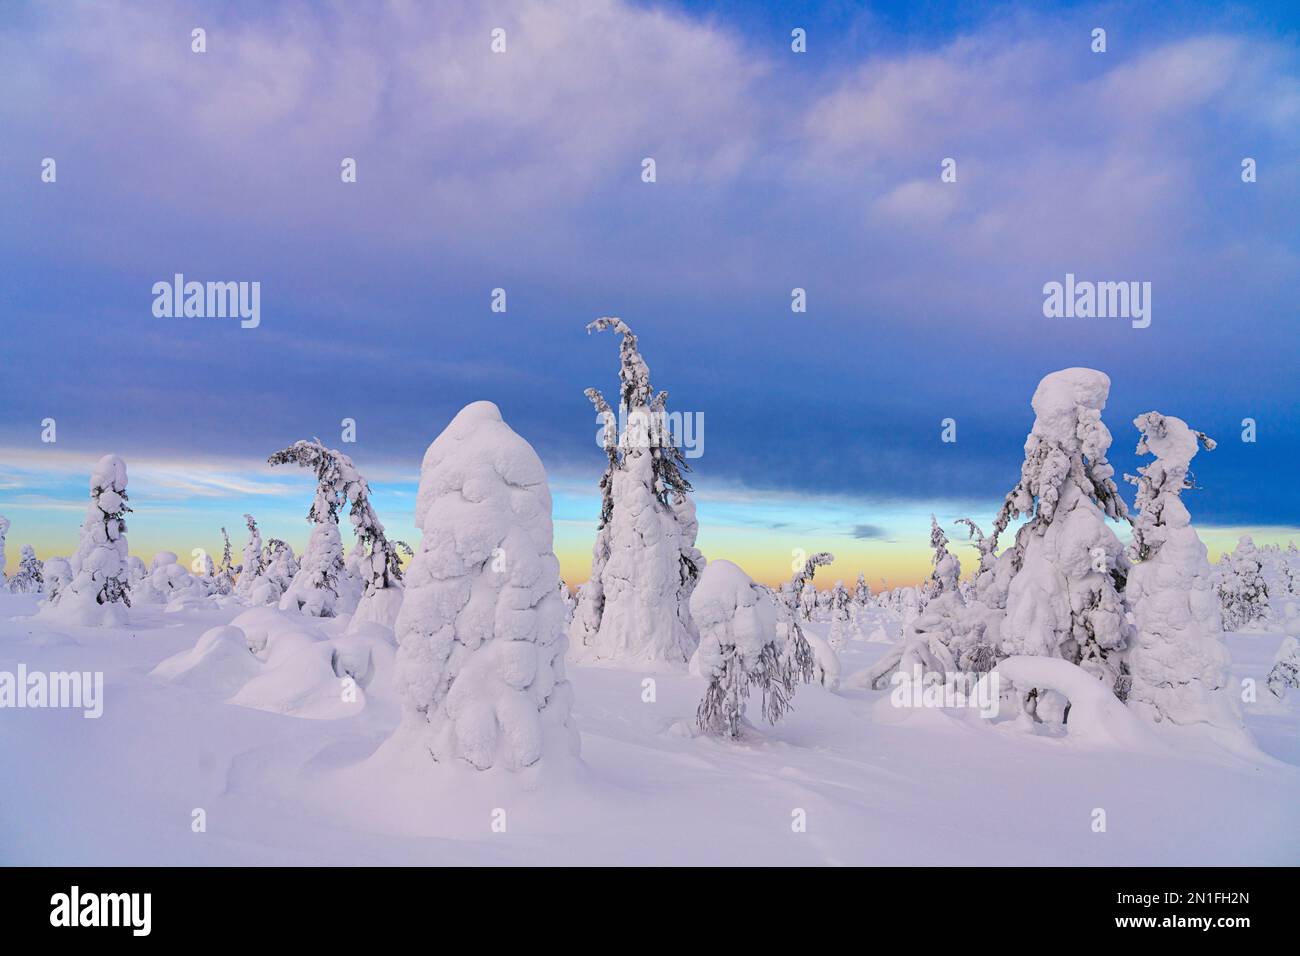 Crépuscule d'hiver au-dessus de la forêt enneigée, Parc national de Riisitunturi, Posio, Laponie, Finlande, Europe Banque D'Images